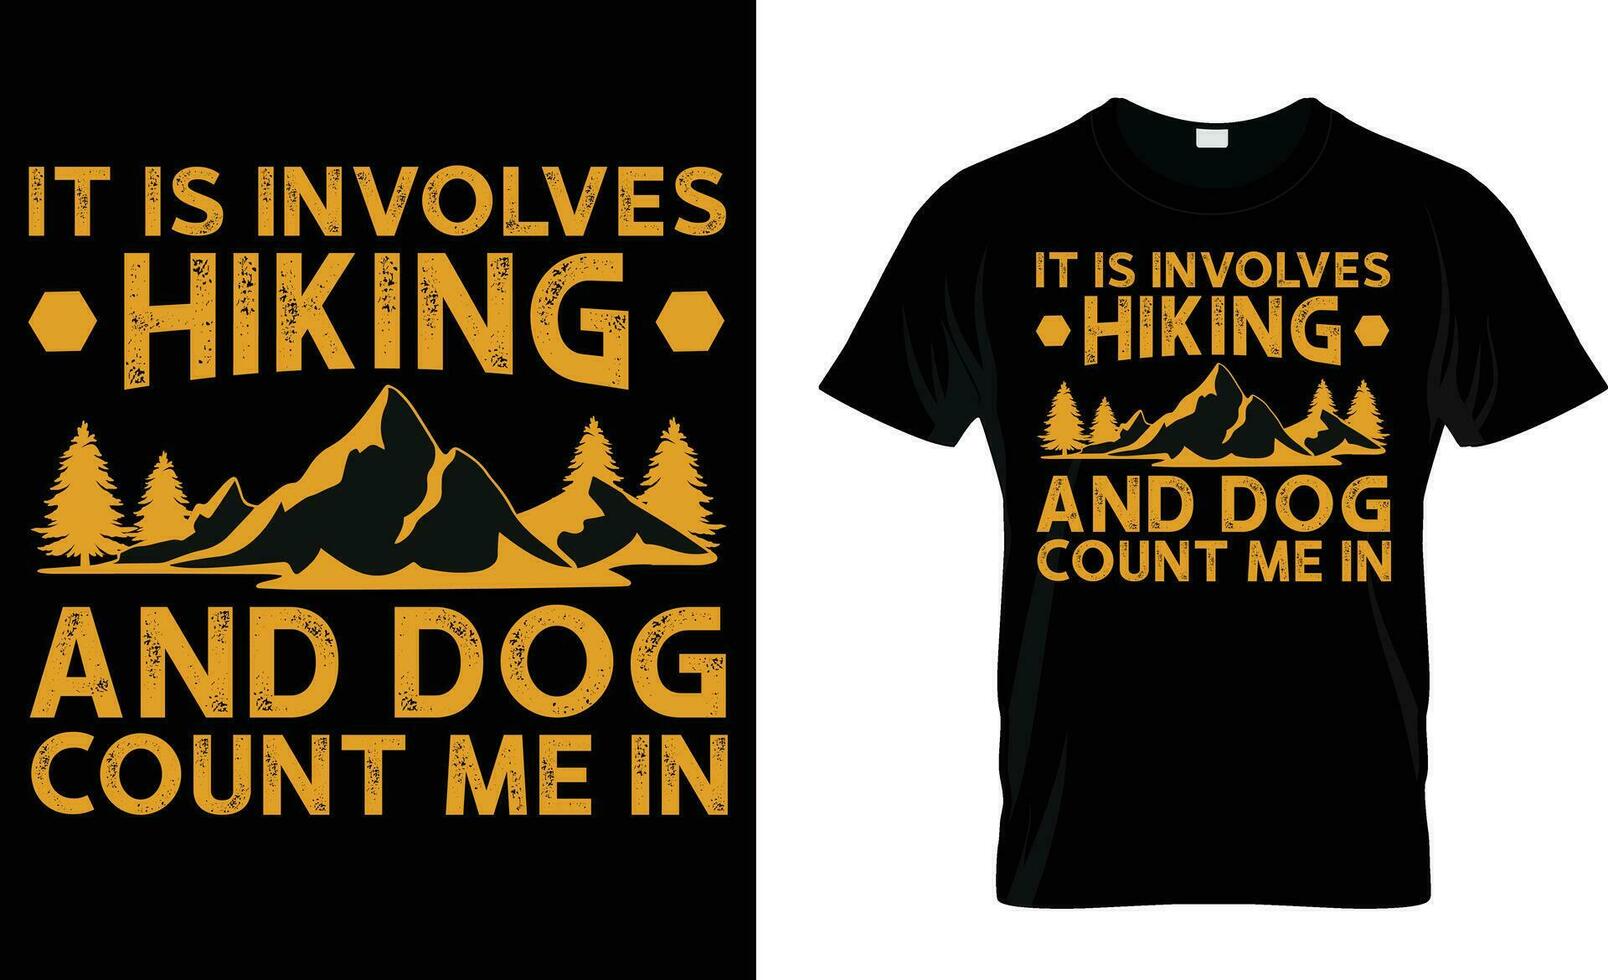 als het houdt in wandelen en honden tellen me in t-shirt ontwerp, wandelen t-shirt vector